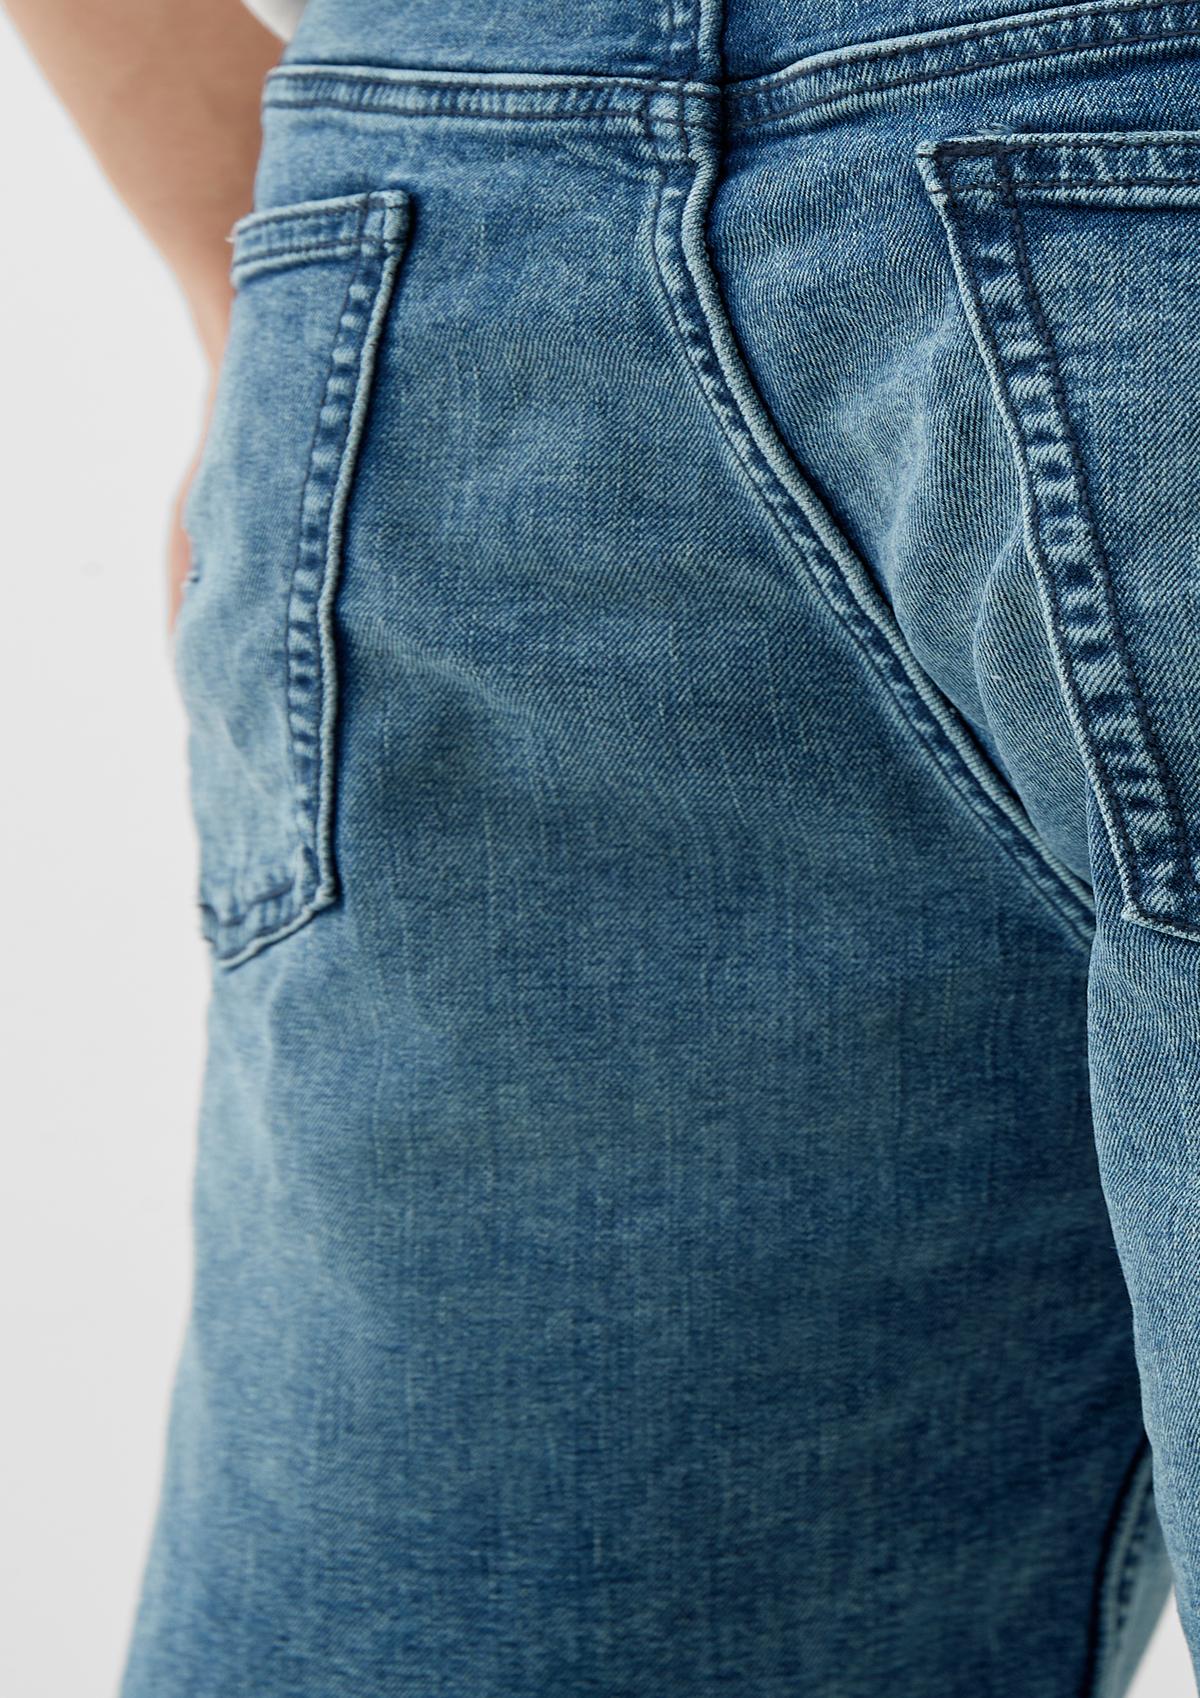 s.Oliver Slim : jean de style 5 poches